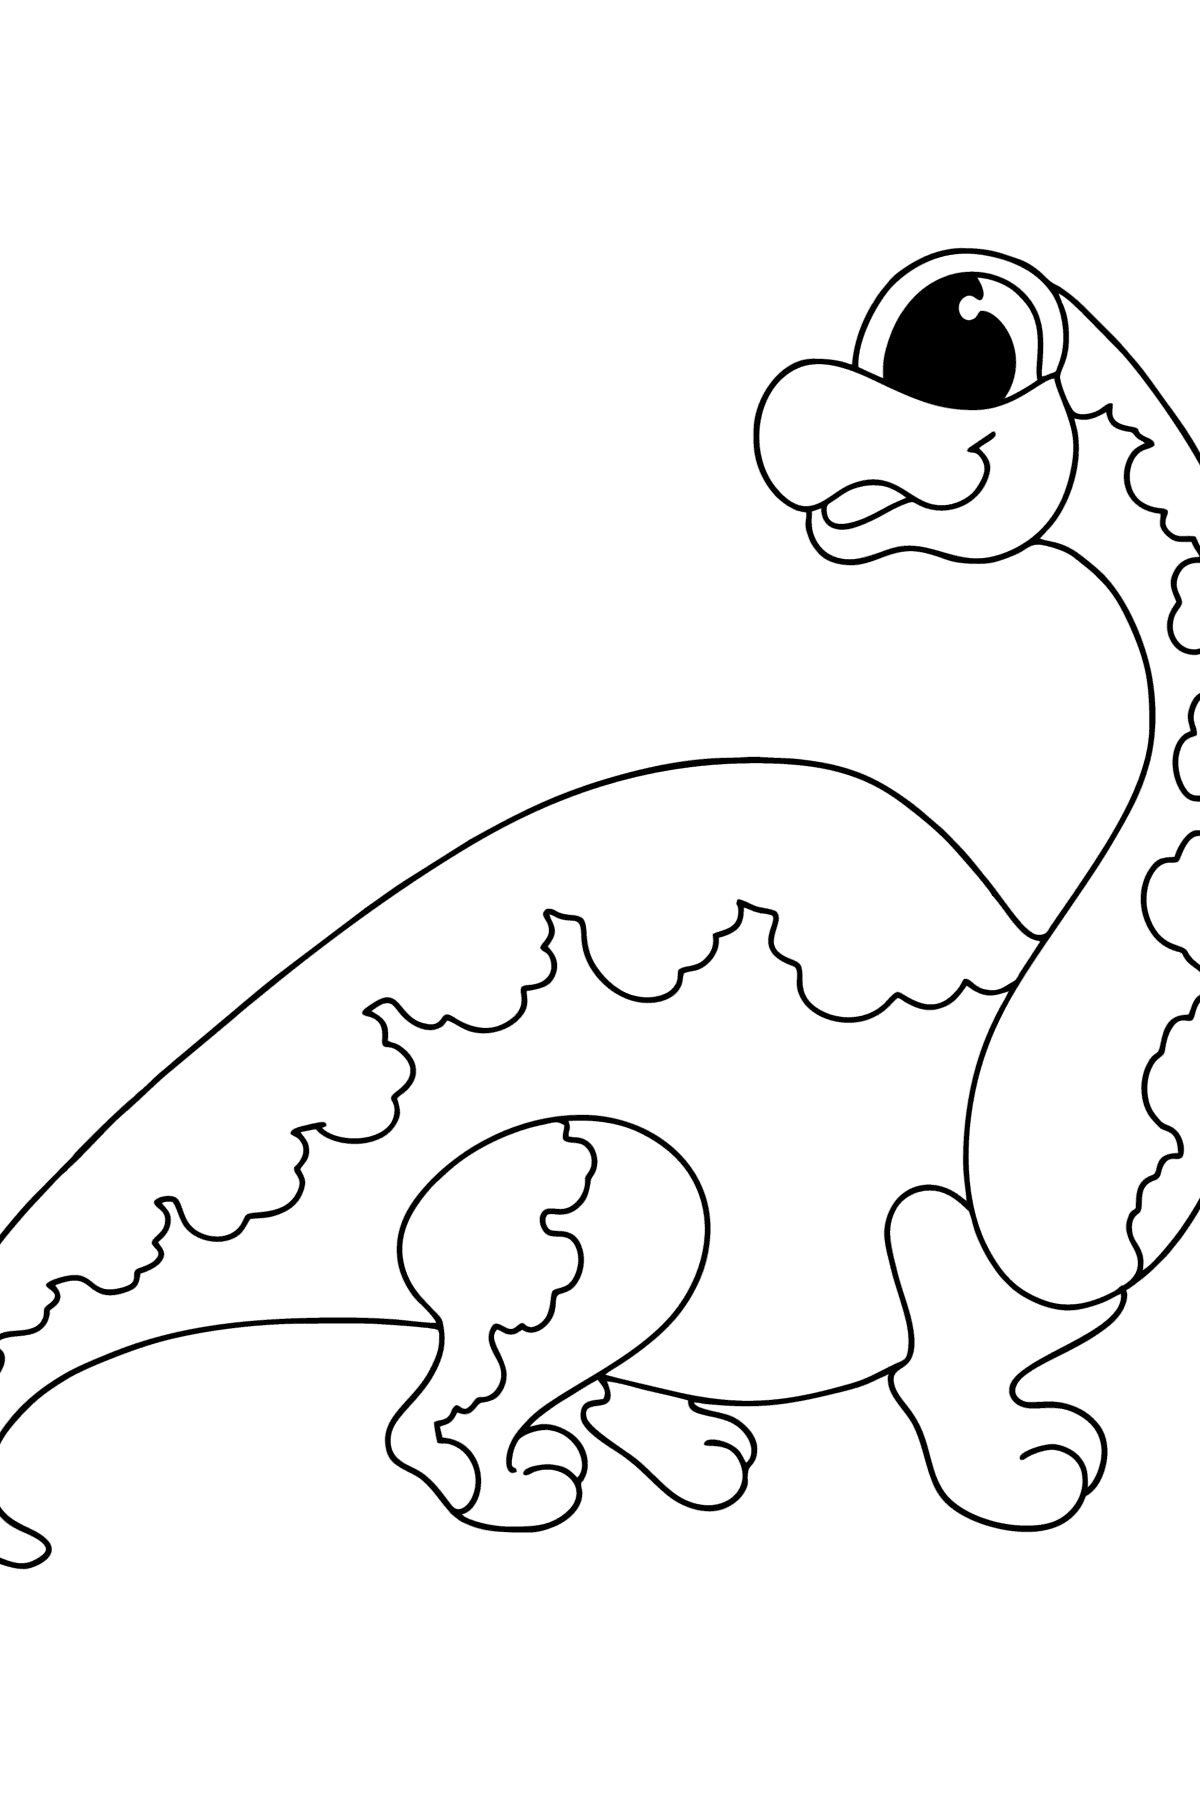 Boyama sayfası brachiosaurus - Boyamalar çocuklar için